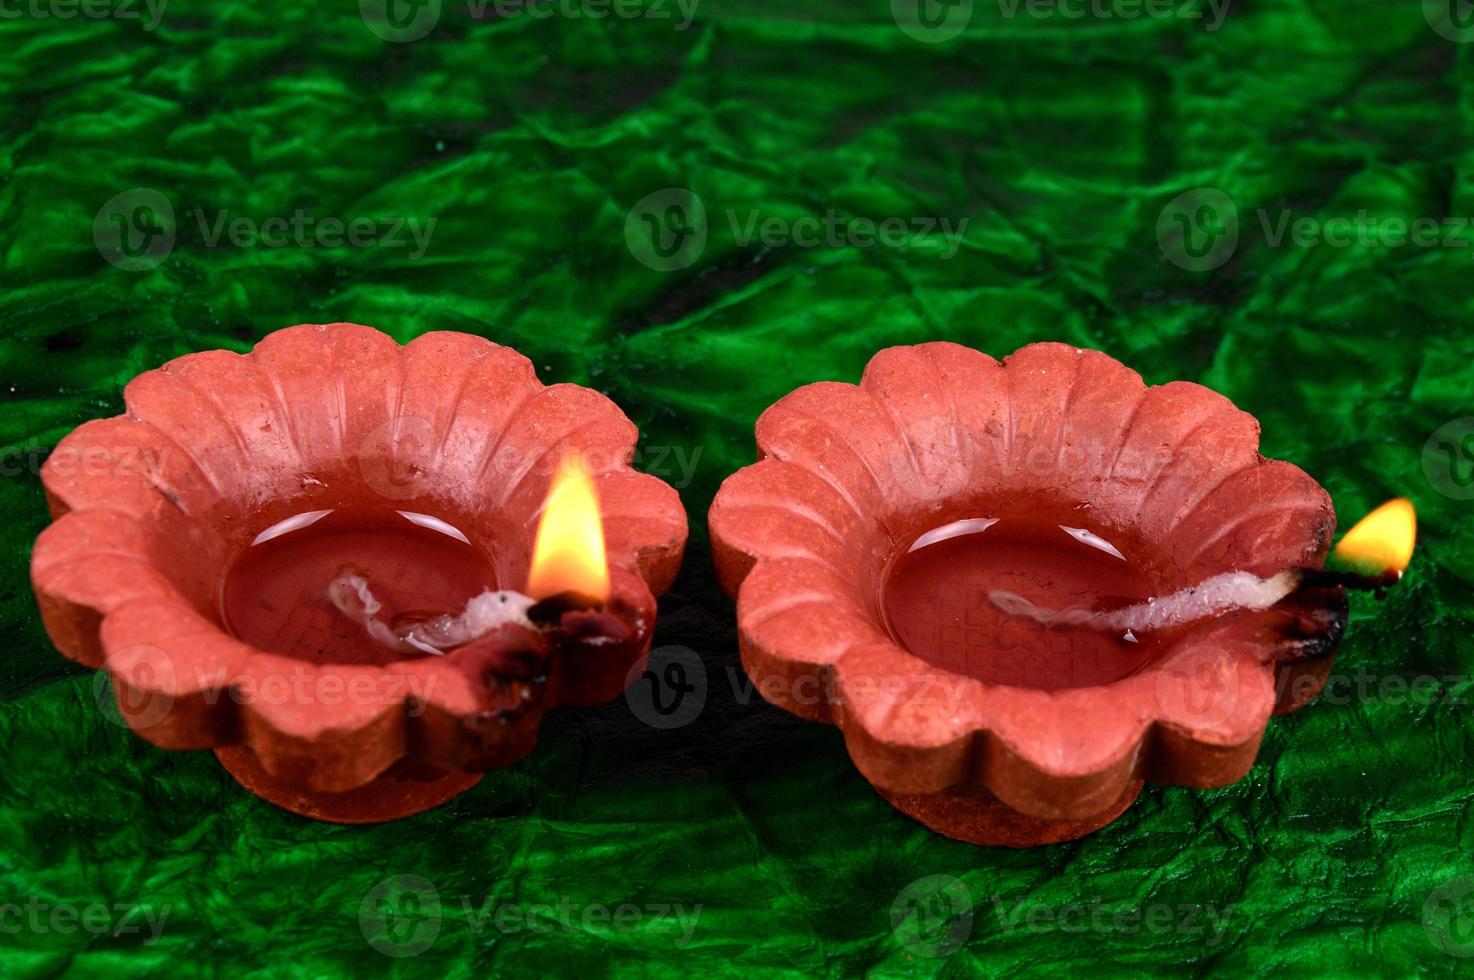 happy diwali - lâmpadas diya acesas durante a celebração do diwali. Lanternas coloridas e decoradas são acesas à noite nesta ocasião com rangoli de flores, doces e presentes. foto